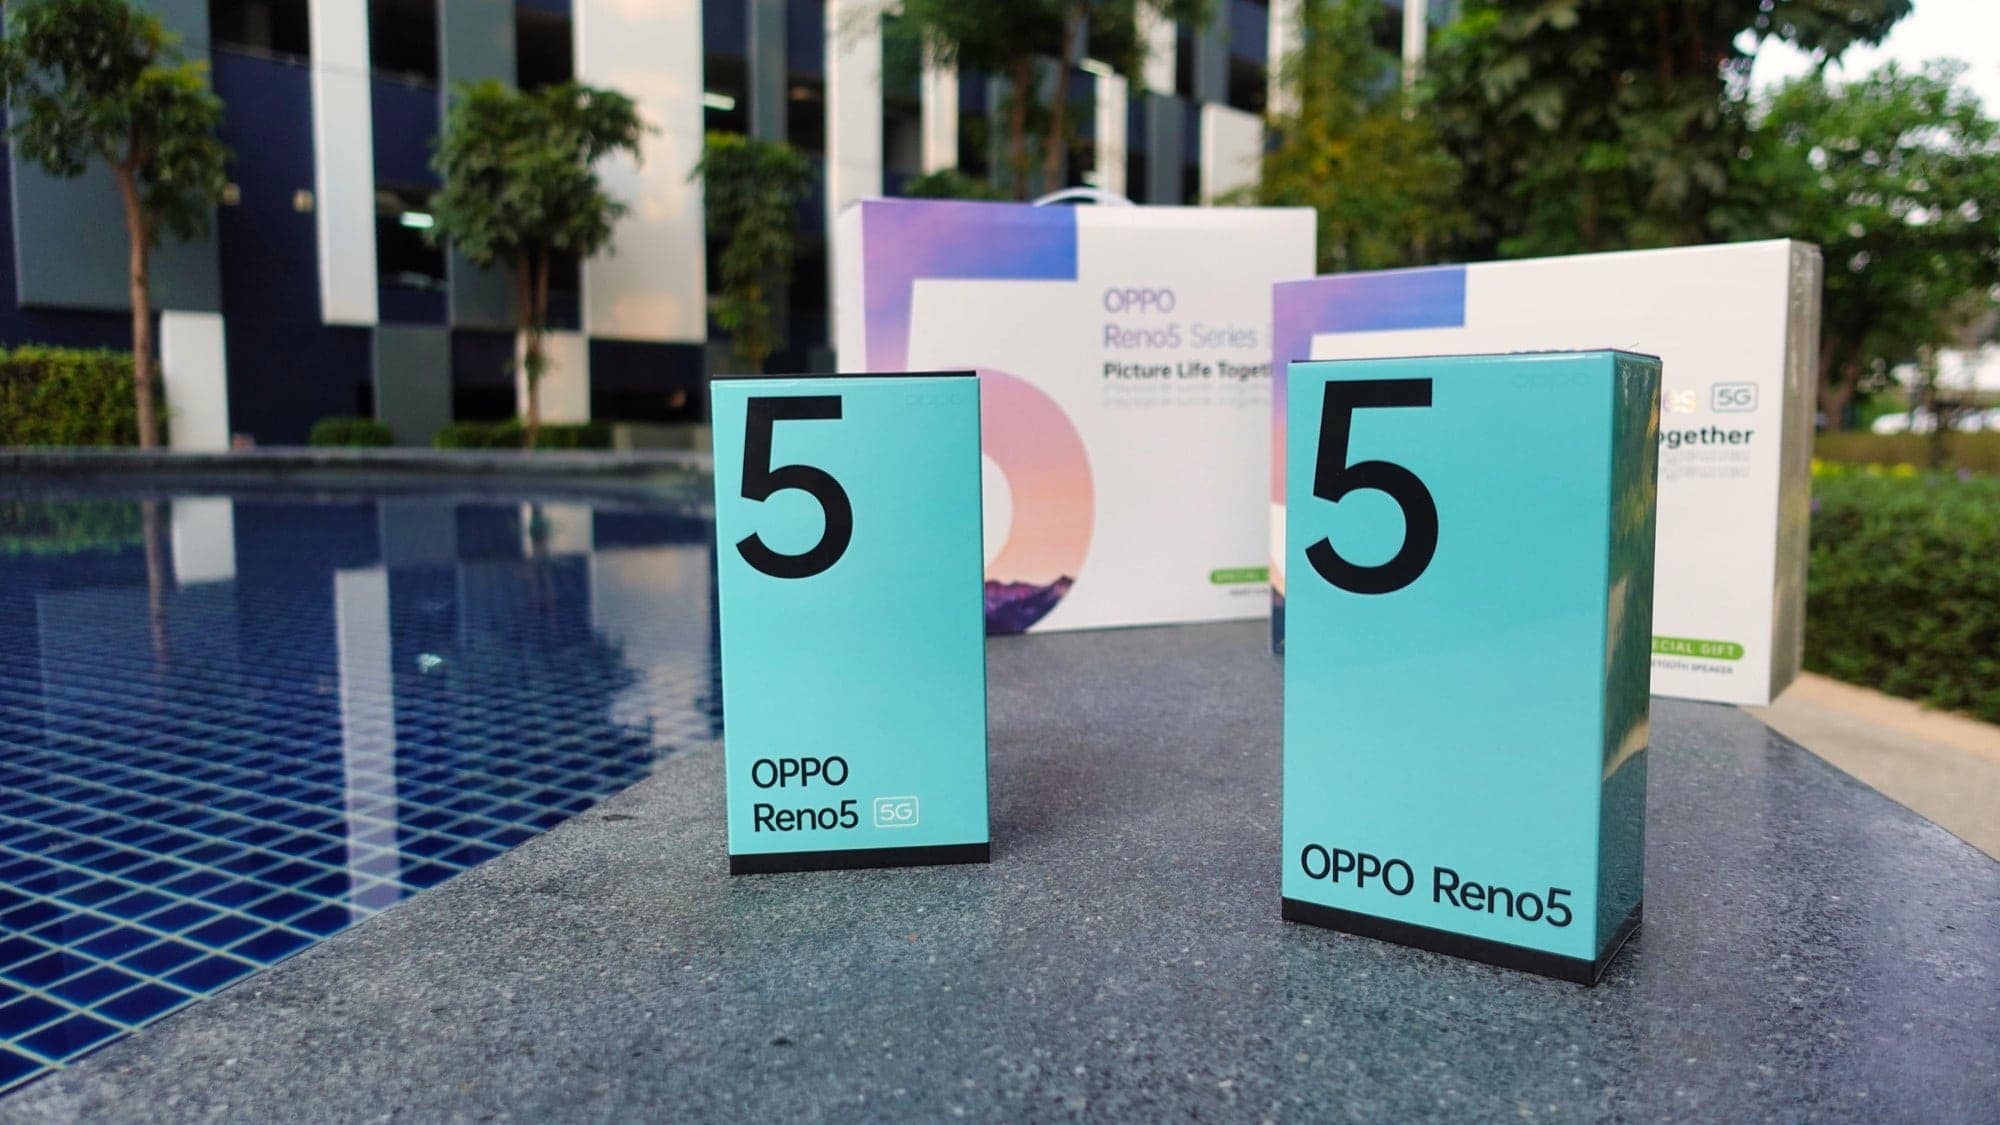 รีวิว OPPO Reno5 Series 5G สมาร์ทโฟนเพื่อการถ่ายวิดีโอ Portrait กับดีไซน์ใหม่นำเทรนด์ 7